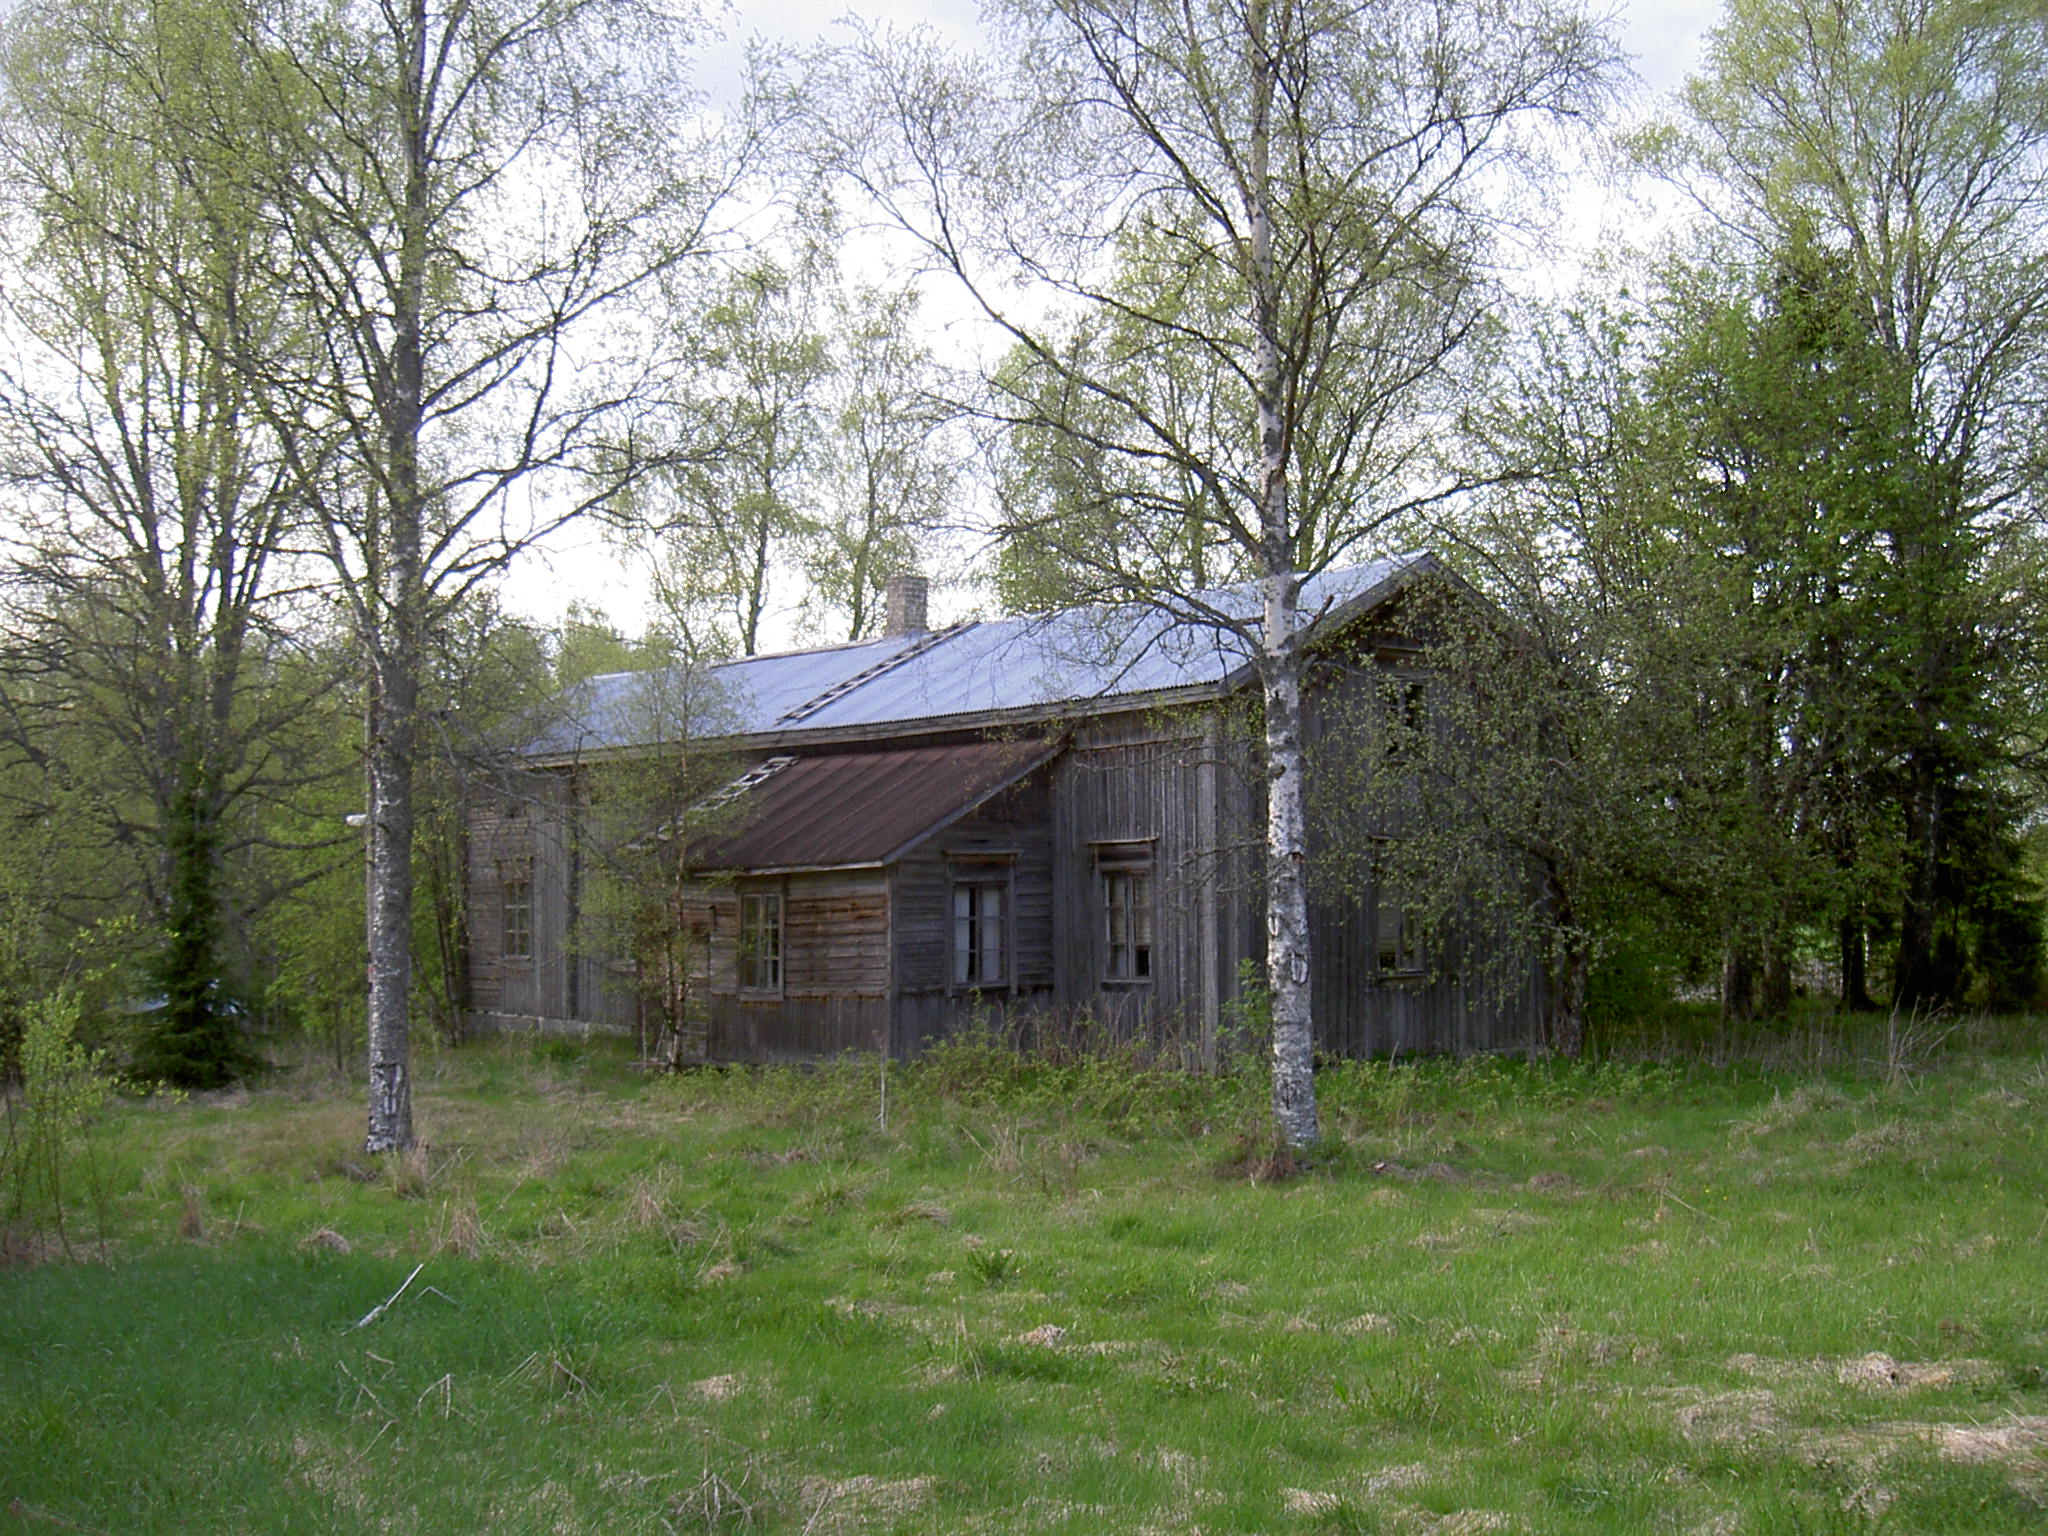 Så här såg Forslunds gård i Lillsjö ut våren 2003. Åtminstone en del av huset var från slutet på 1700-talet då den första nybyggaren Matts Mickelsson (1755-1797)bosatte sig i Lillsjö. Sedan övertogs den av sonen Matts Mattsson (1779-1853) och sedan av dennes son Johan Henrik Mattsson (1804-1875). Följande ägare blev dennes son Henrik Johansson (1828-1916) som kallades "Lillsjö-Hindrik". Efter Henrik bodde dennes son Karl Erik Forslund där och den sista som bodde i huset före det revs var Karl Eriks son Sigvald Forslund.